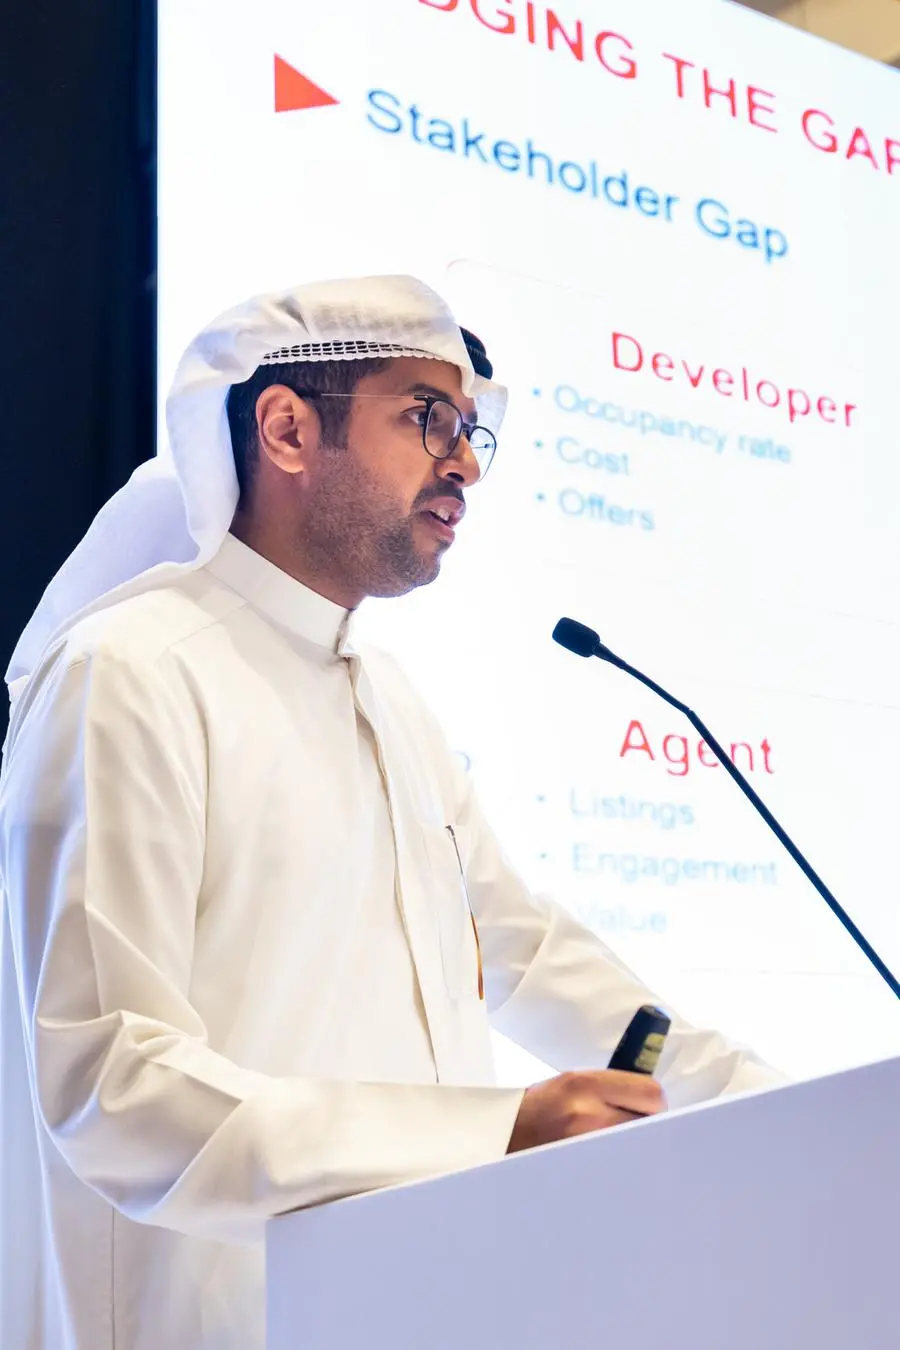 نخبة من الخبراء العالميين يشاركون في مؤتمر سيتي سكيب البحرين لمناقشة تطورات الاستدامة والتحول الرقمي في القطاع العقاري